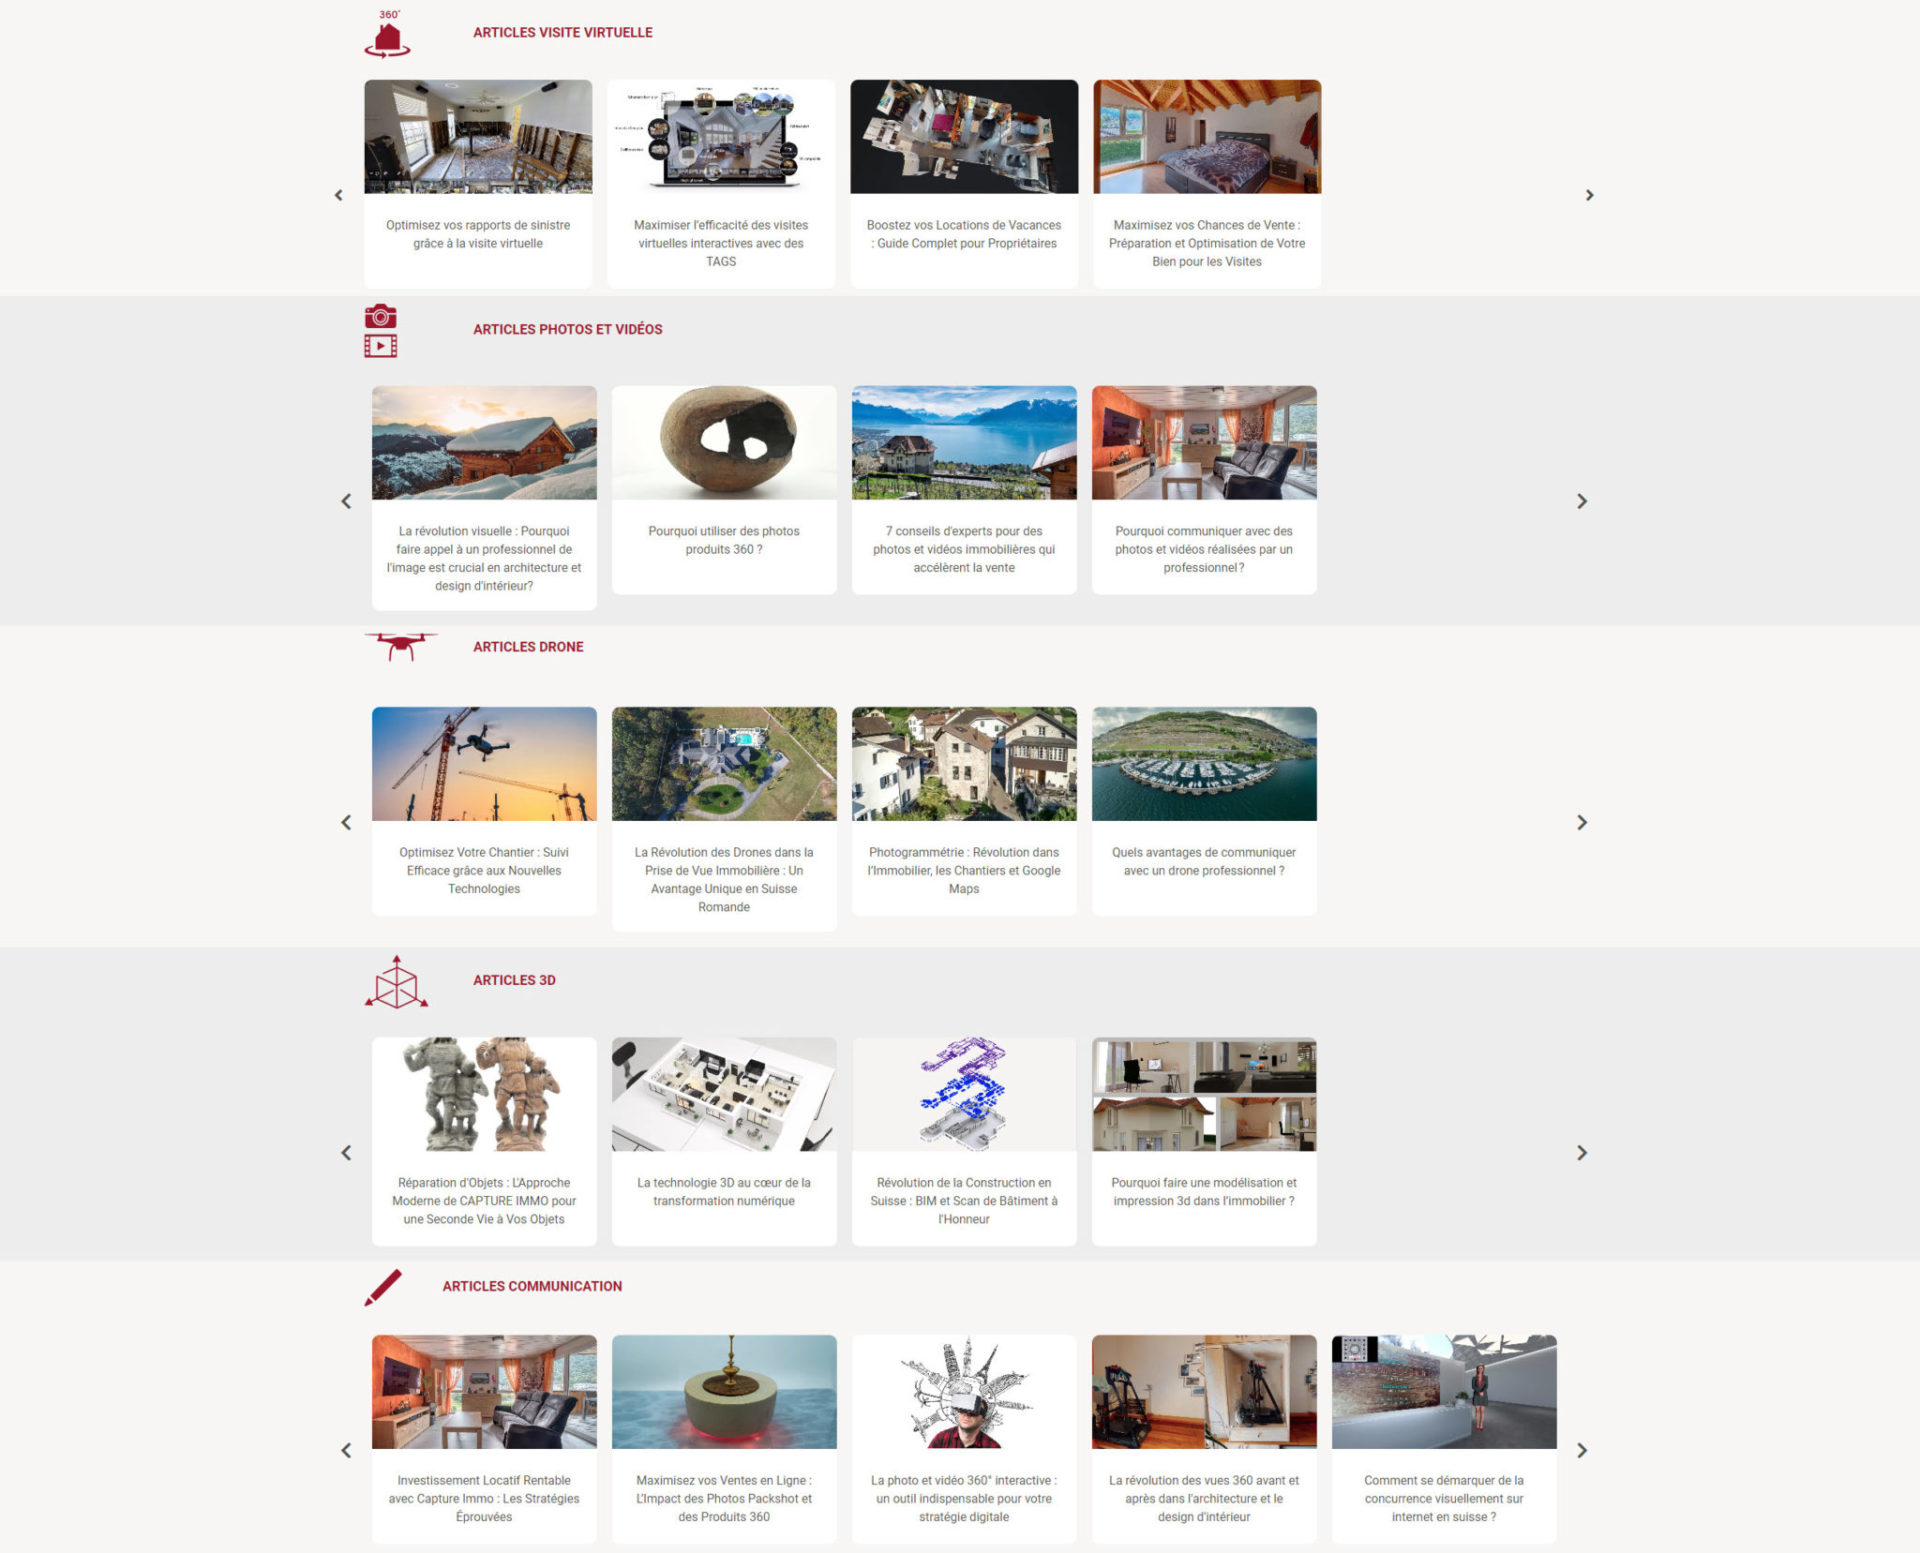 Capture d'écran d'une page de blog sur la capture immobilière, montrant des articles et des conseils sur la photographie immobilière et les visites virtuelles.